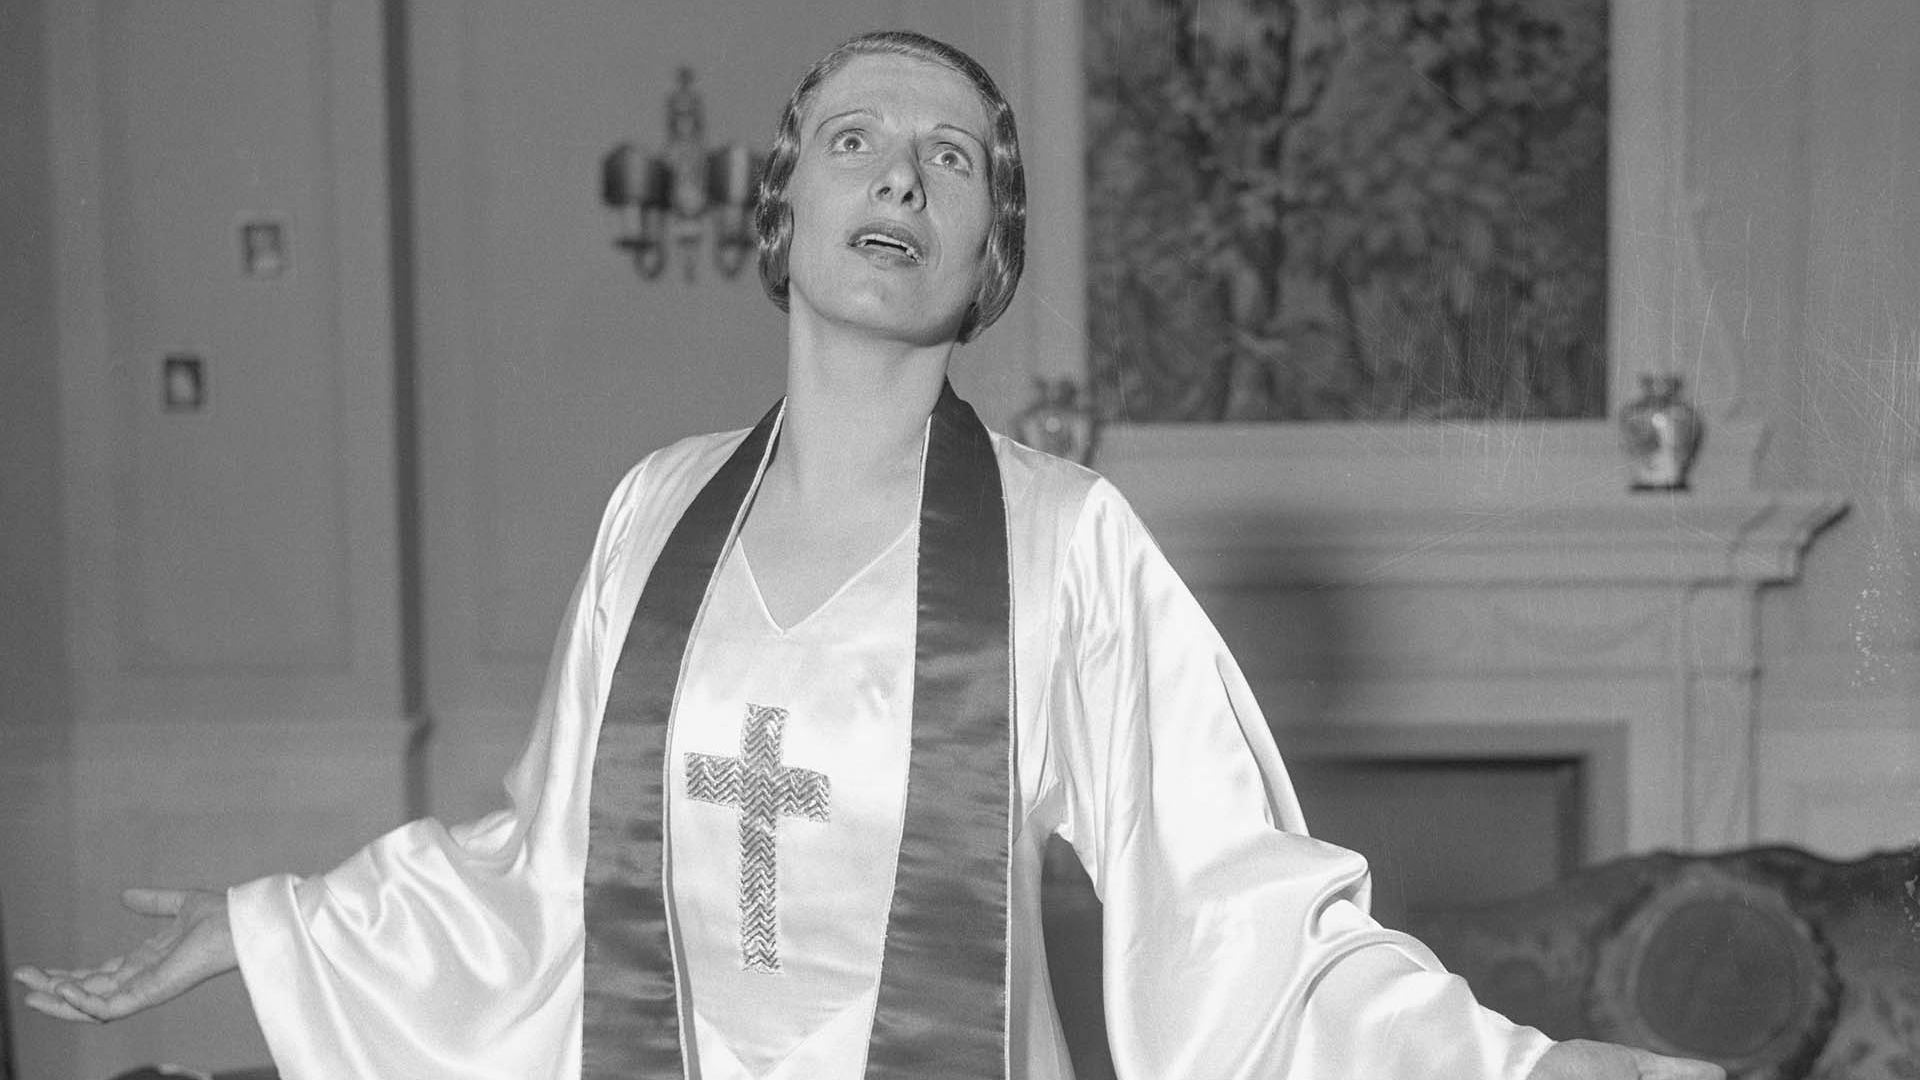 La misteriosa desaparición de la predicadora que bautizó a Marilyn Monroe y la leyenda de su ataúd con teléfono